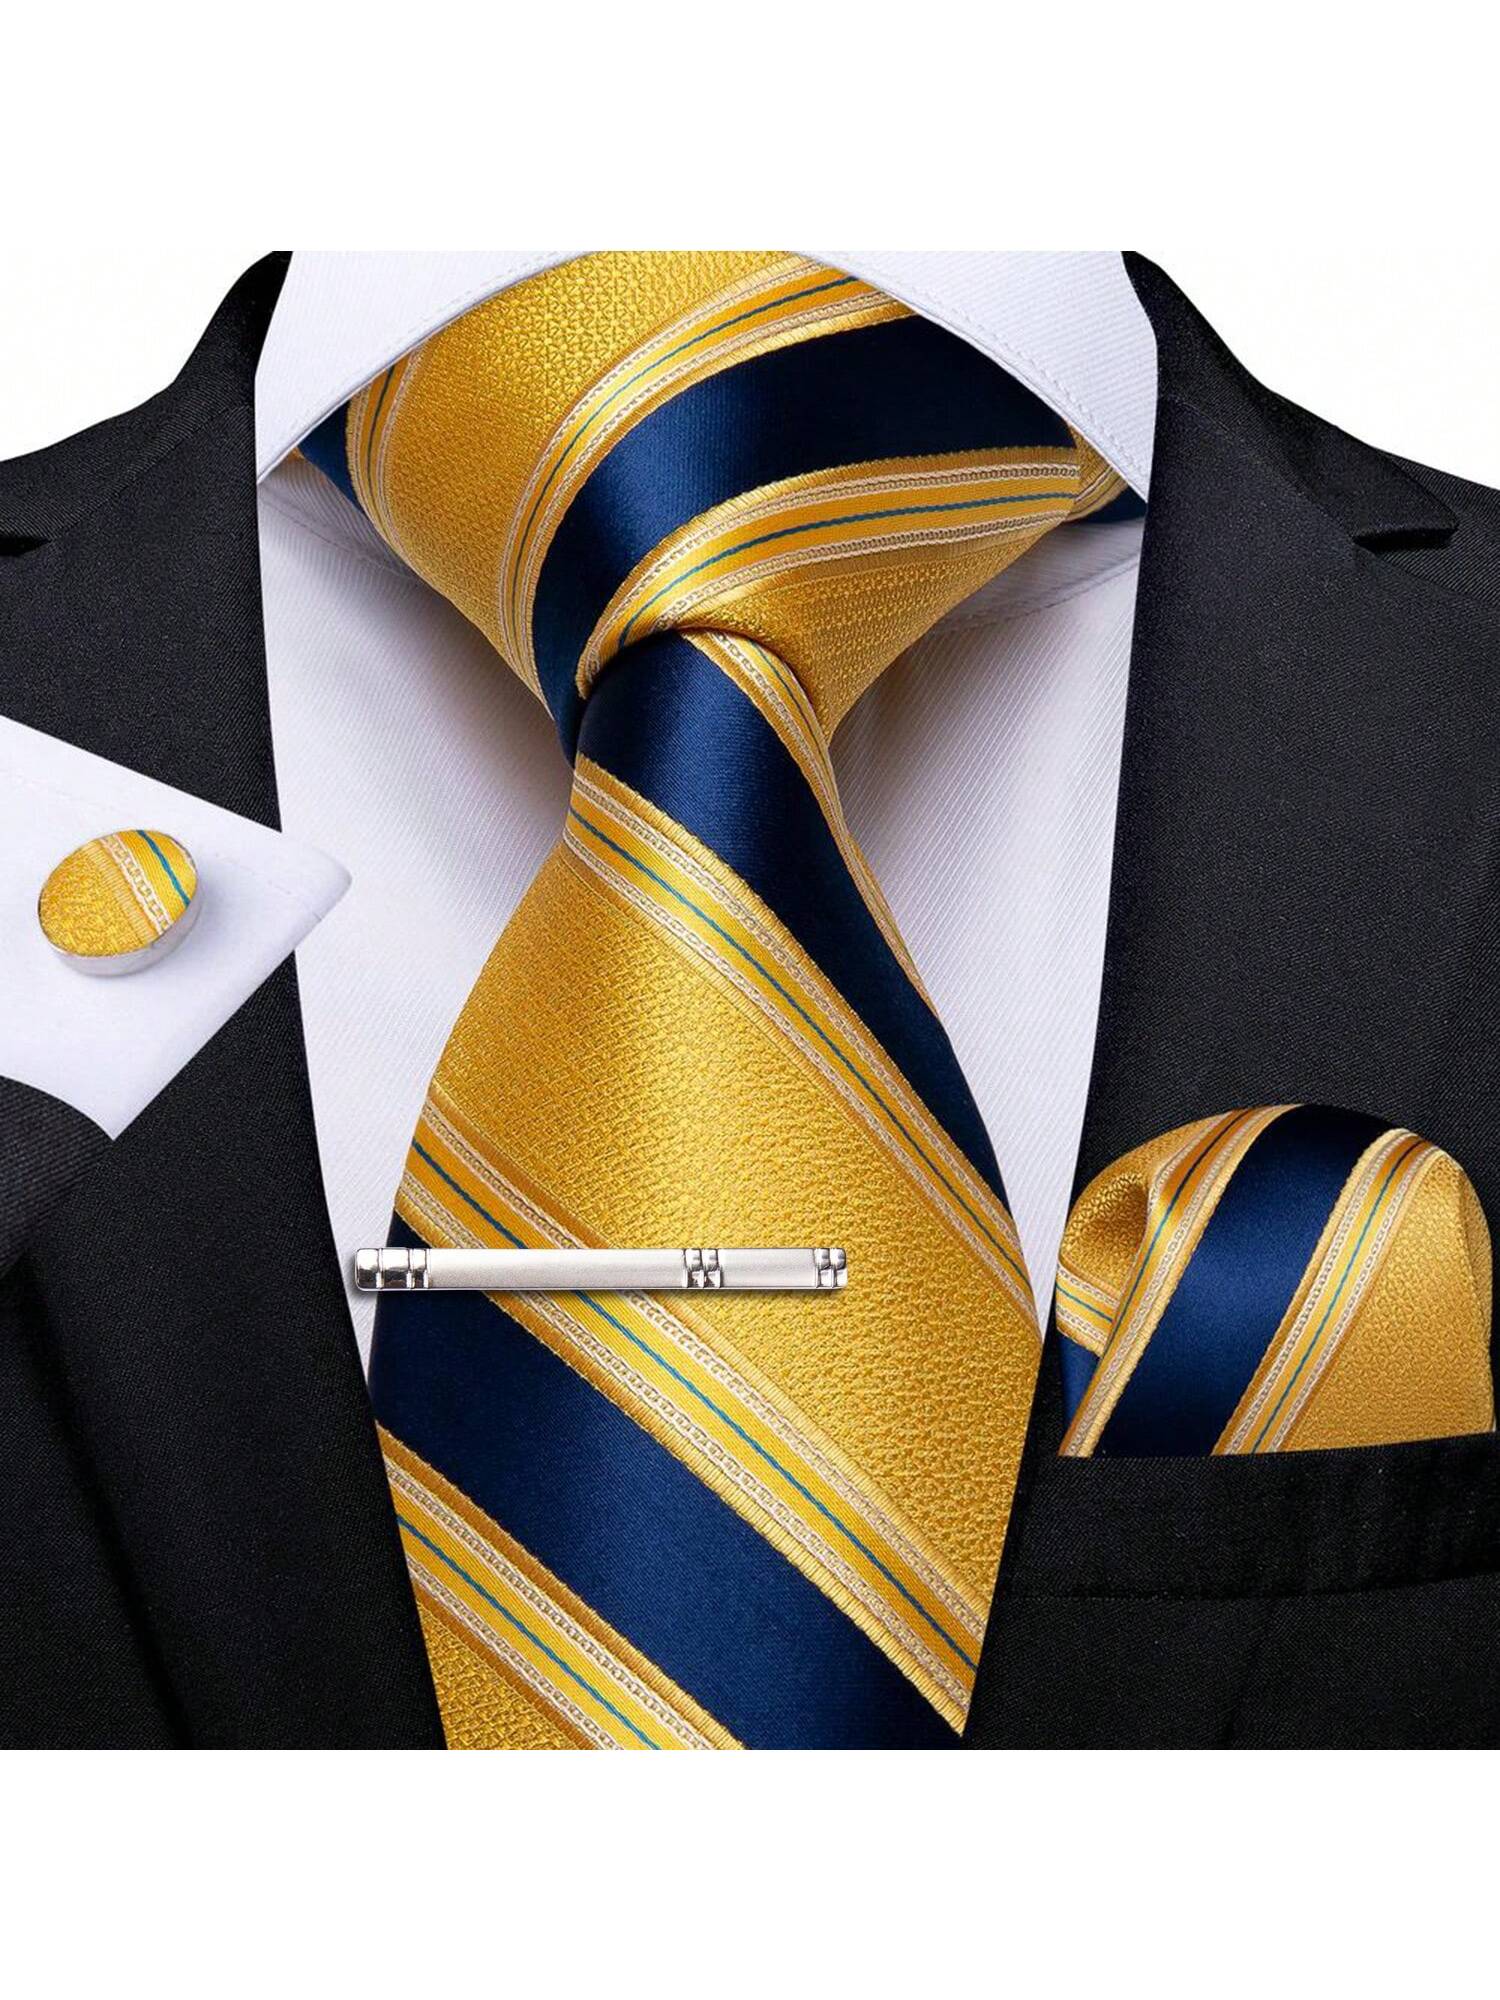 цена DiBanGu мужской галстук шелковый красный синий однотонный свадебный галстук карманные квадратные запонки зажим набор Пейсли, желтый